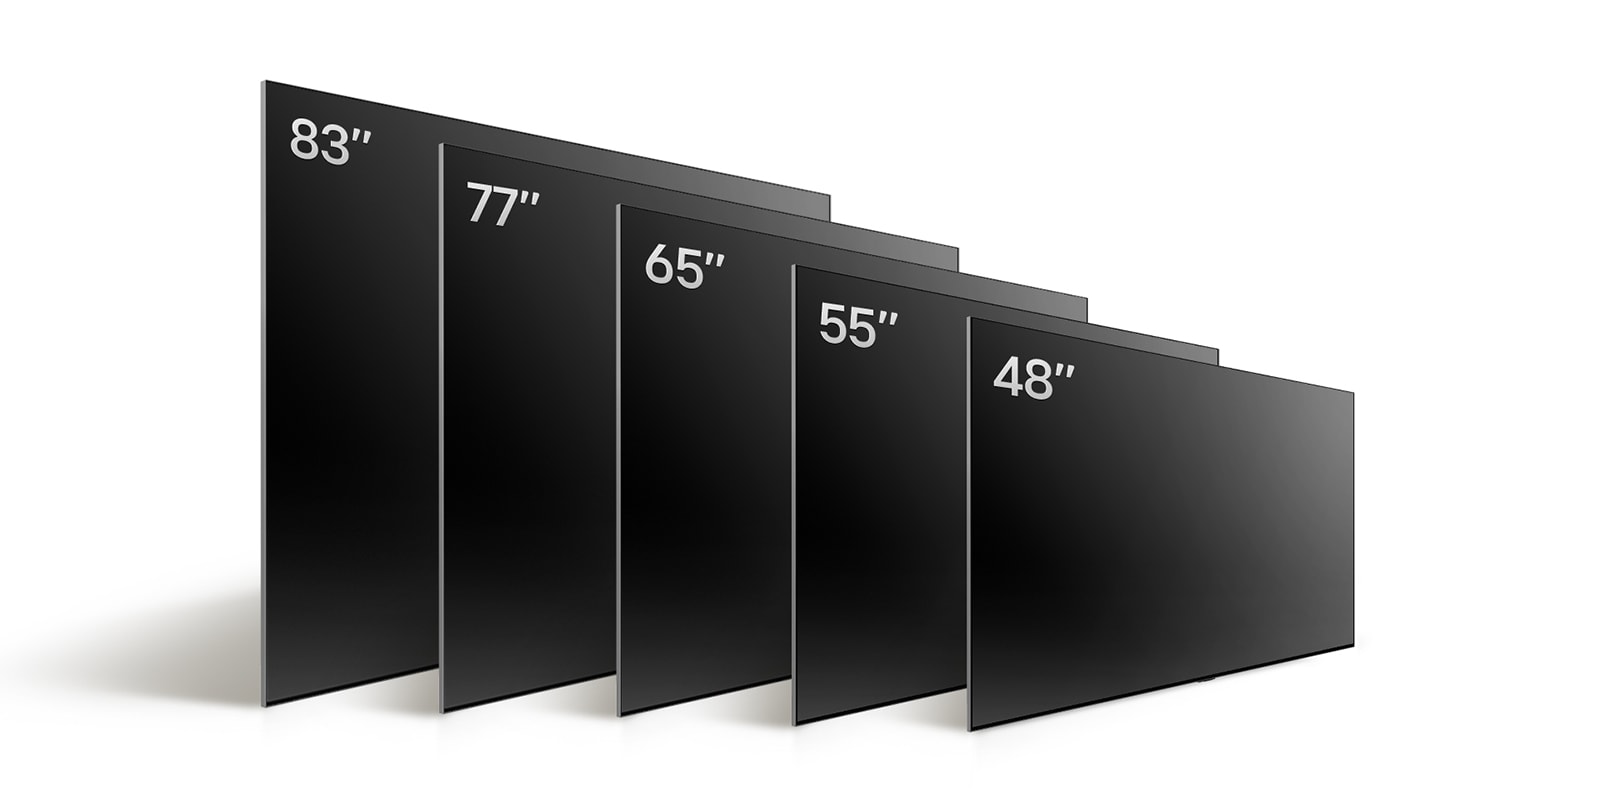 So sánh các kích cỡ khác nhau của LG OLED TV, OLED C4, trình bày OLED C4 48", OLED 55", OLED C4 65", OLED C4 77 và OLED C4 83".